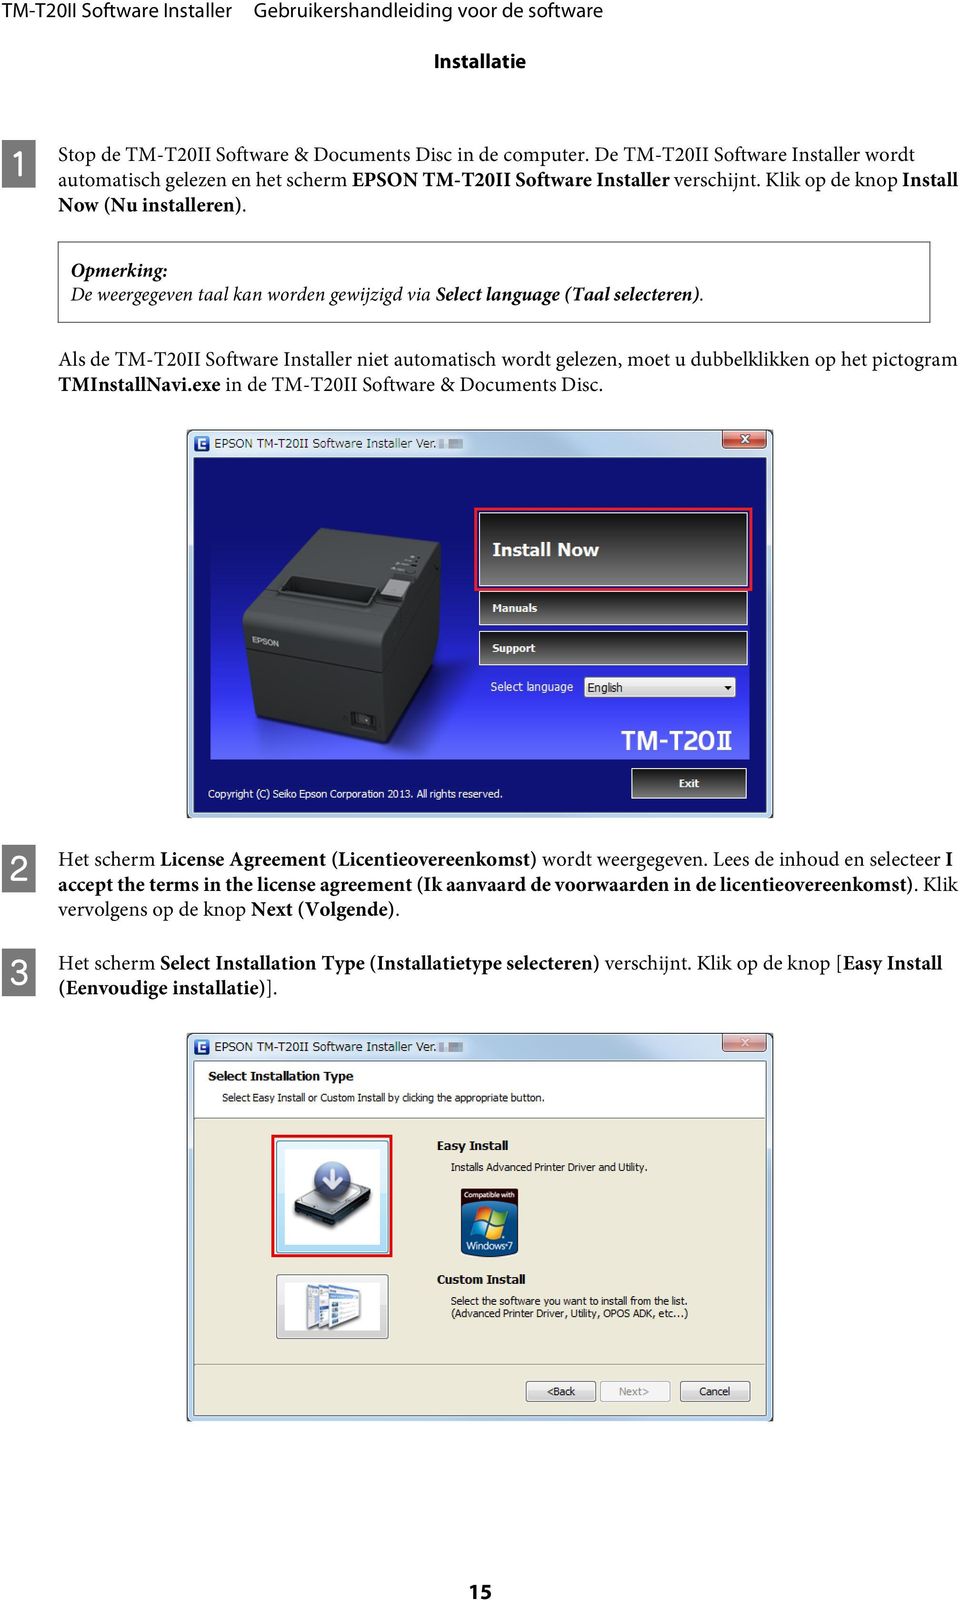 Als de TM-T20II Software Installer niet automatisch wordt gelezen, moet u dubbelklikken op het pictogram TMInstallNavi.exe in de TM-T20II Software & Documents Disc.